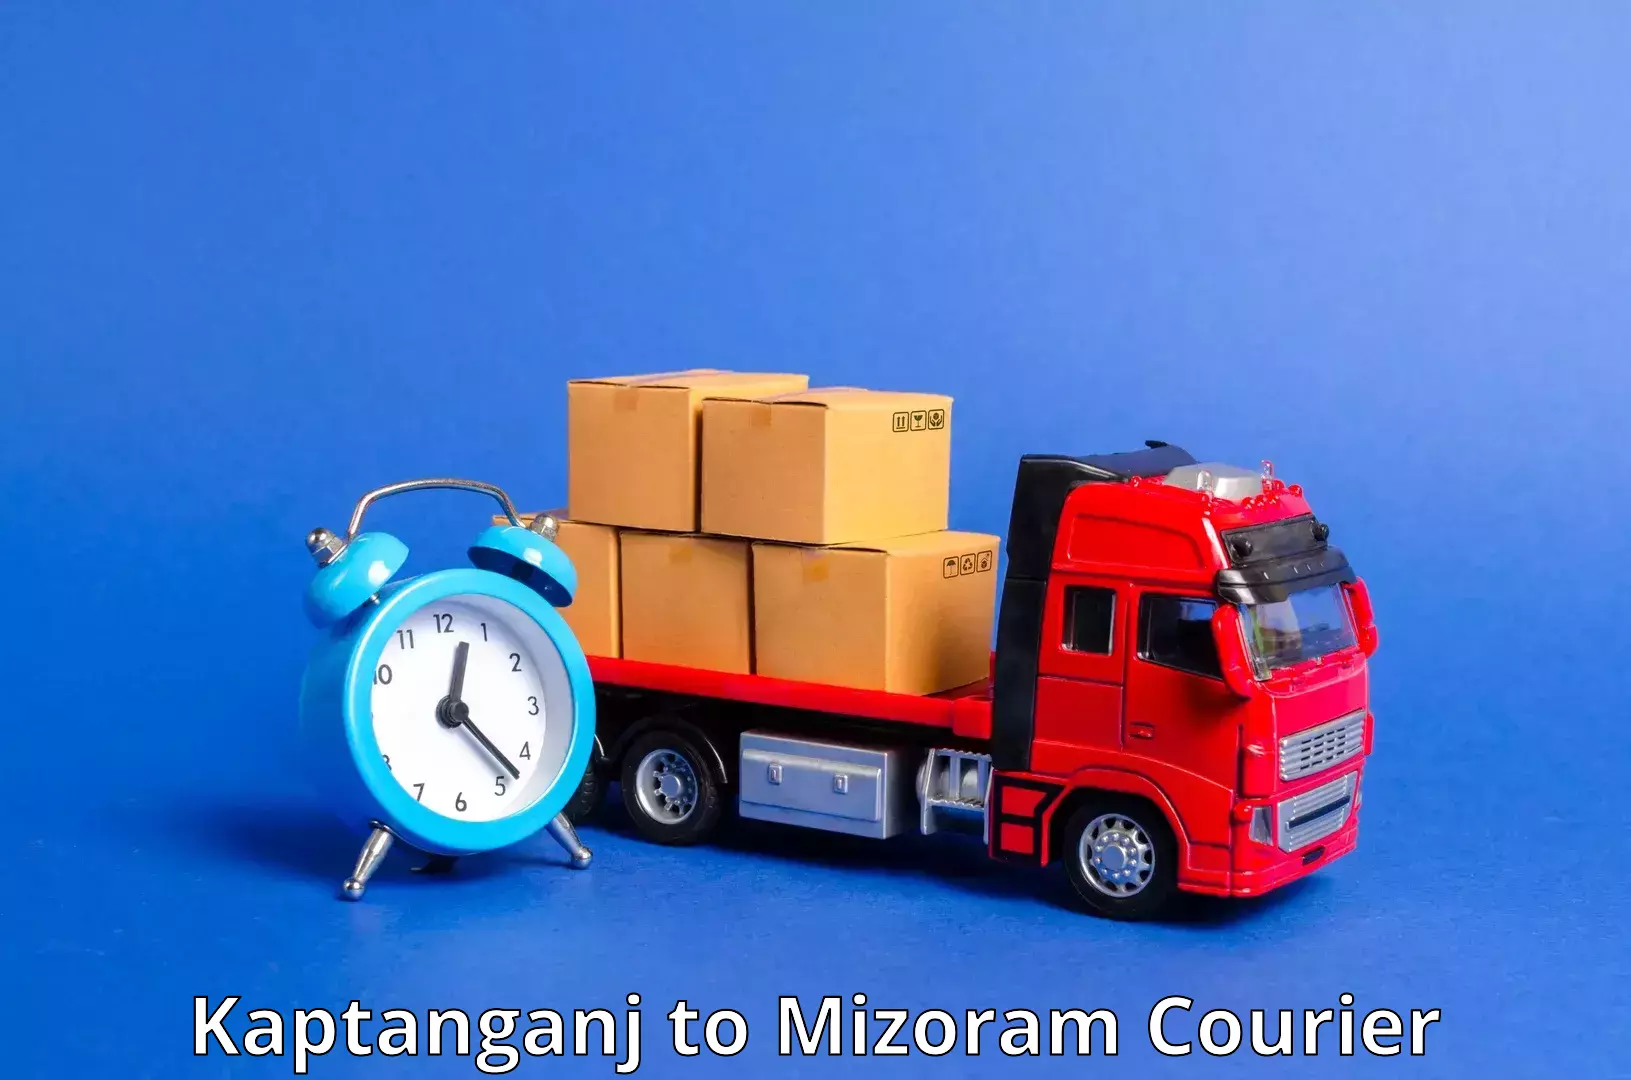 Package consolidation Kaptanganj to Mizoram